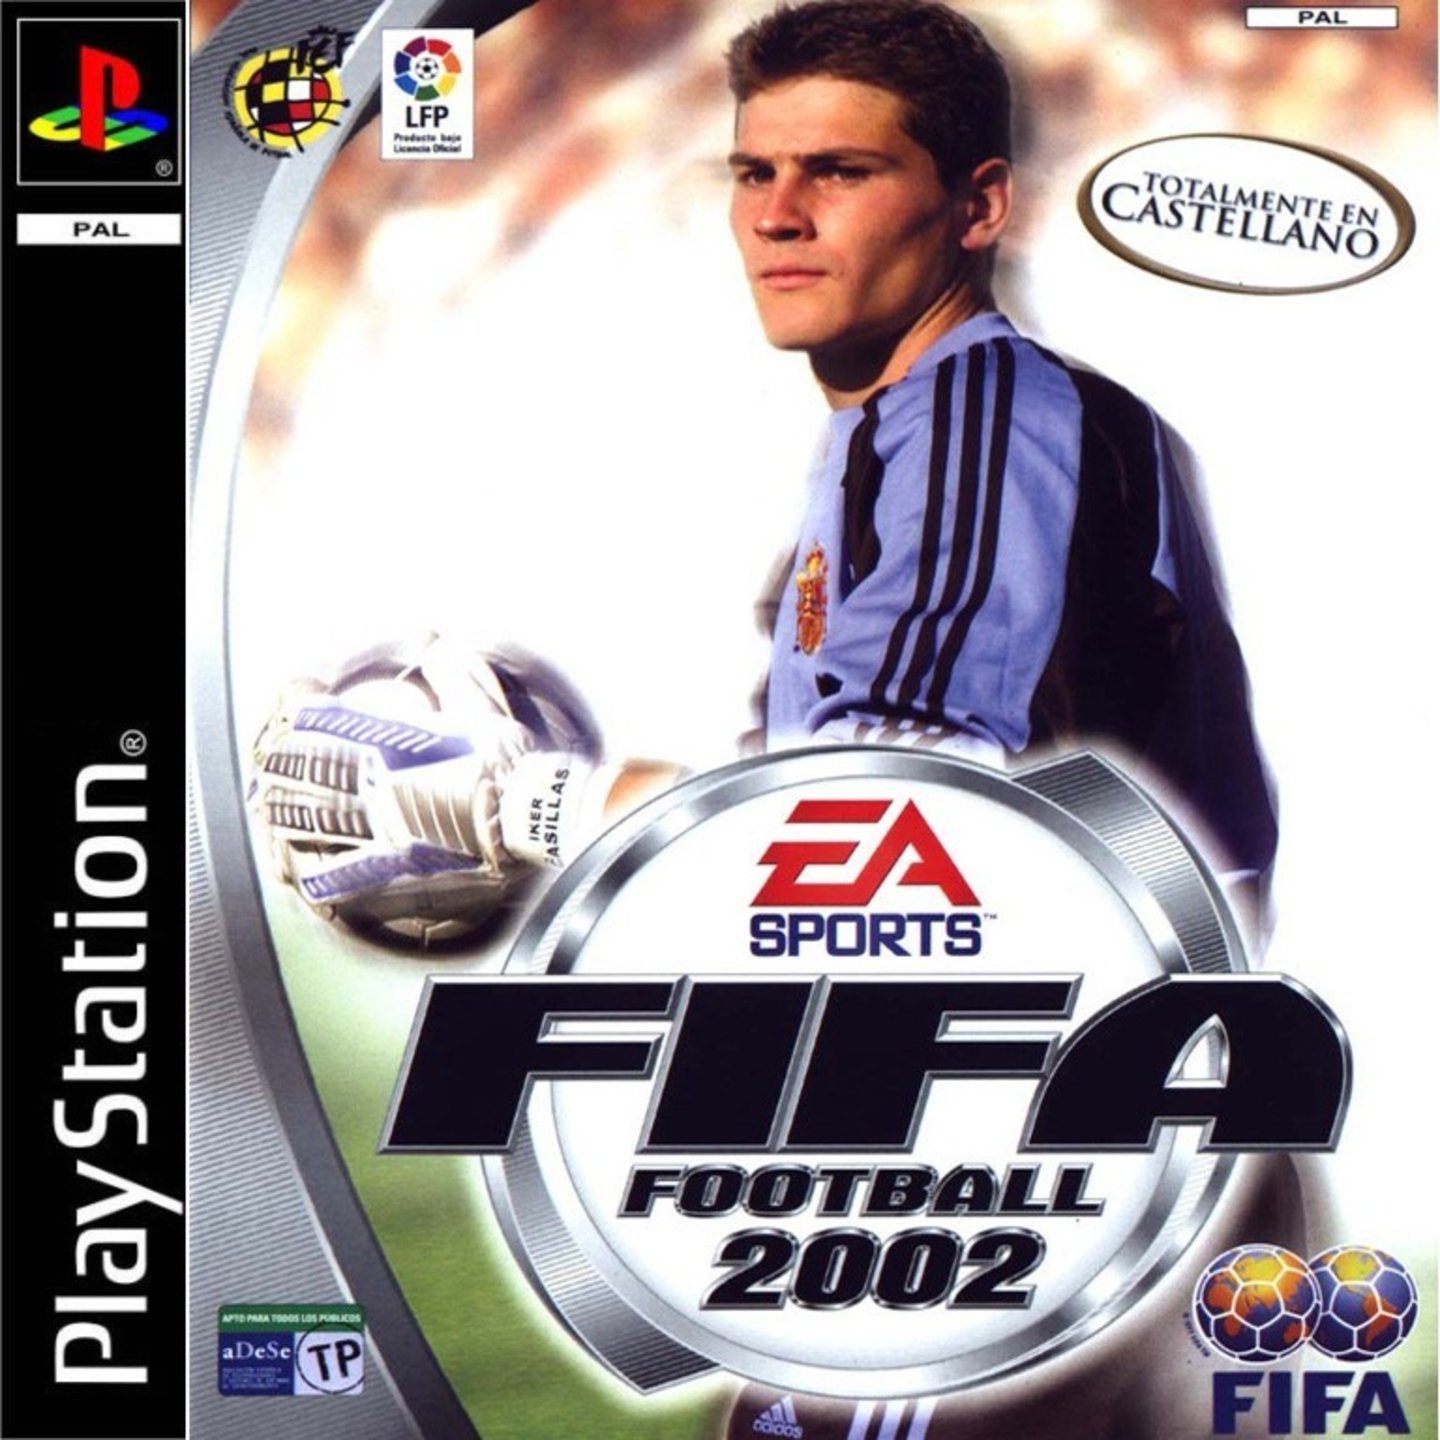 FIFA 2002 ps1 Cover. Сони ПС 2 ФИФА 2002. Диск ФИФА 2001. FIFA 2002 обложка ps1.